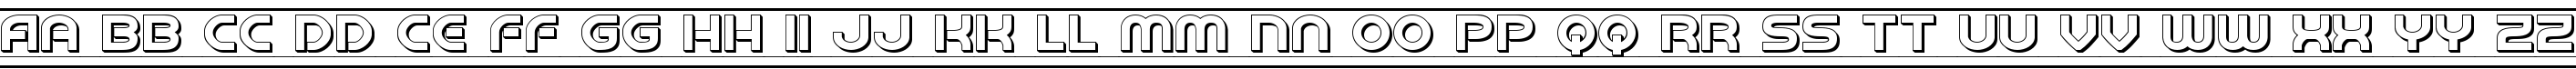 Пример написания английского алфавита шрифтом Barcade 3D